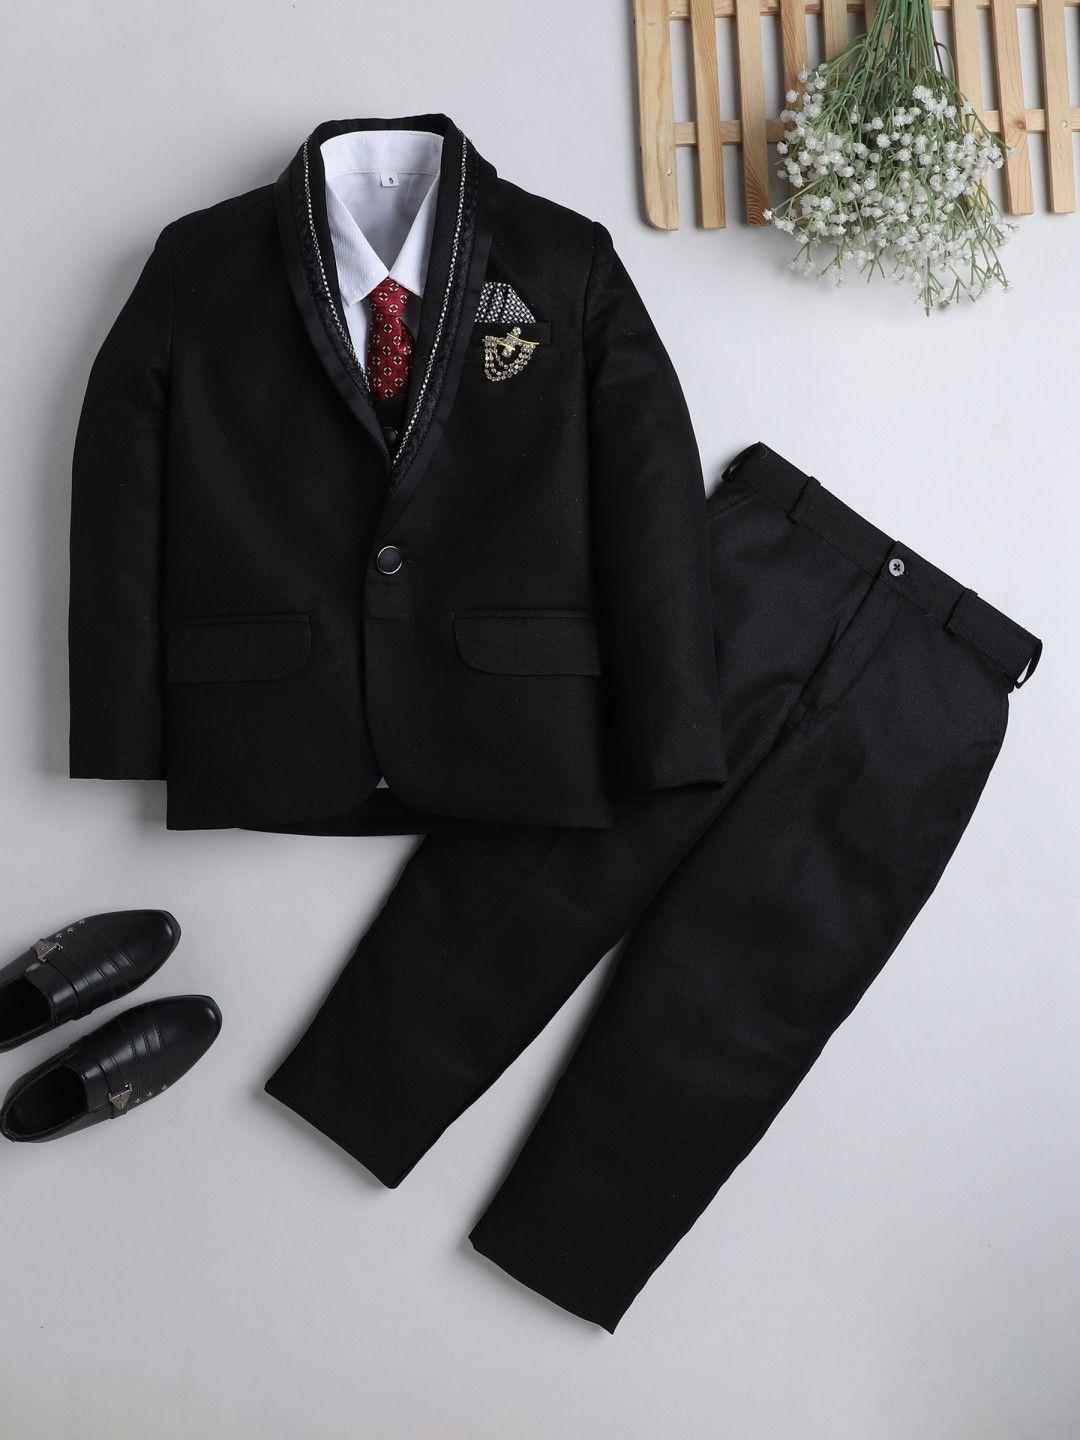 dkgf fashion boys black 5-piece suit